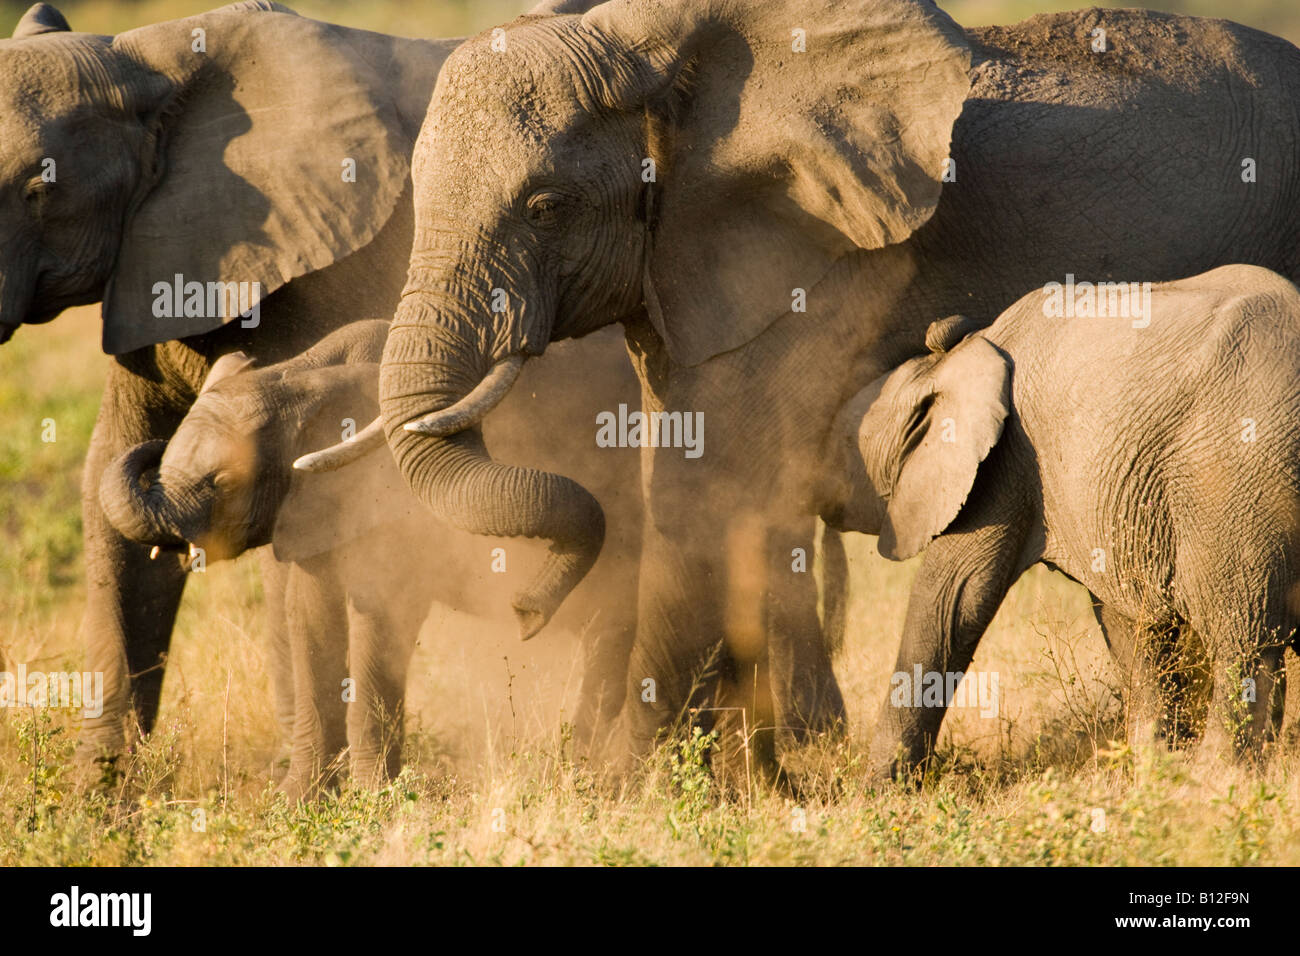 Zucht Herde der Afrikanischen Elefanten, Mama und Baby spielt, Staub baden Trunk eingerollt, Baby Elephant stillende Mutter in der Savanne Sonnenuntergang Botswana Afrika Stockfoto